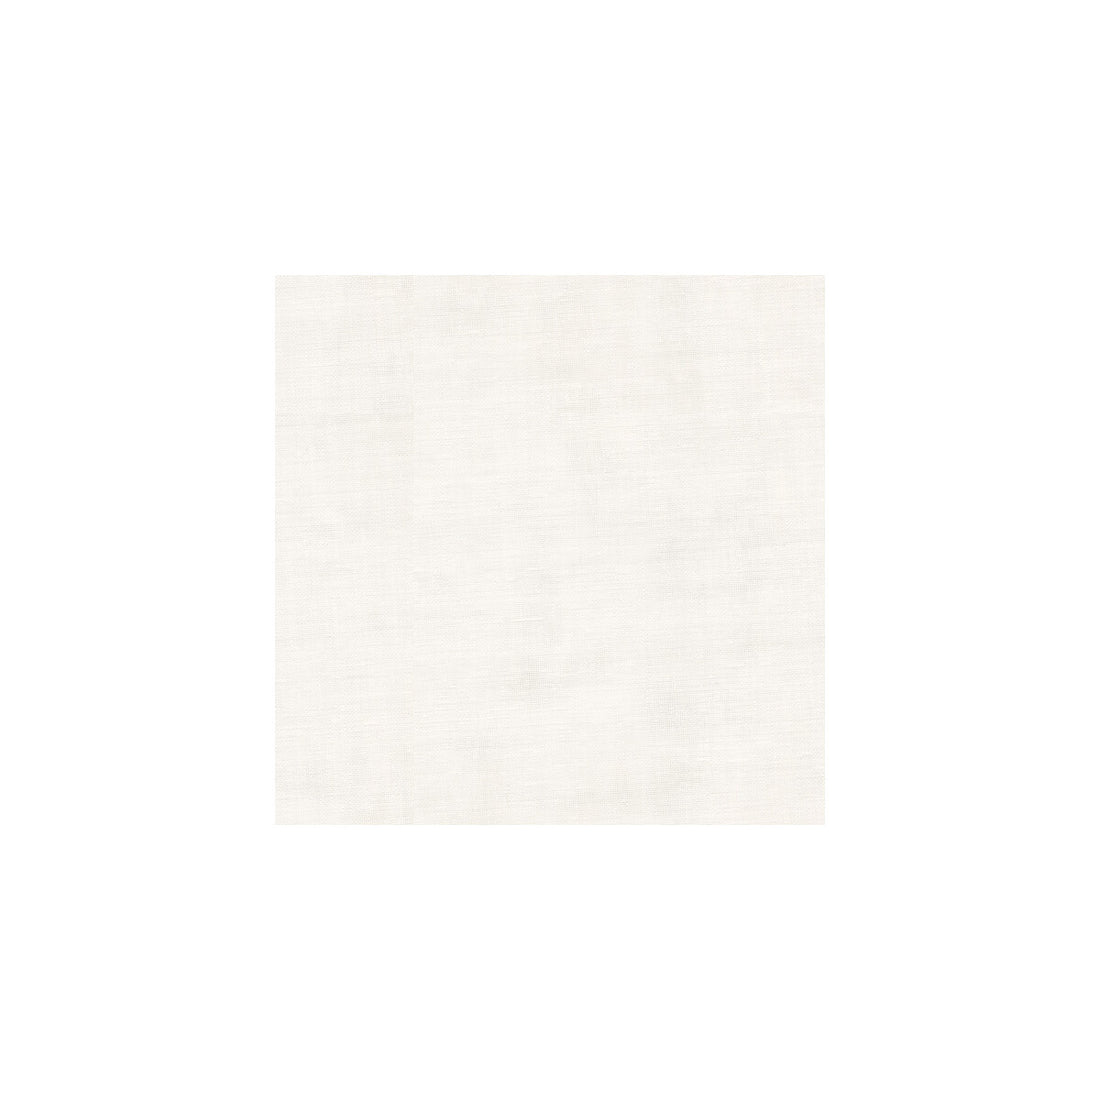 Kravet Basics fabric in 8656-101 color - pattern 8656.101.0 - by Kravet Basics